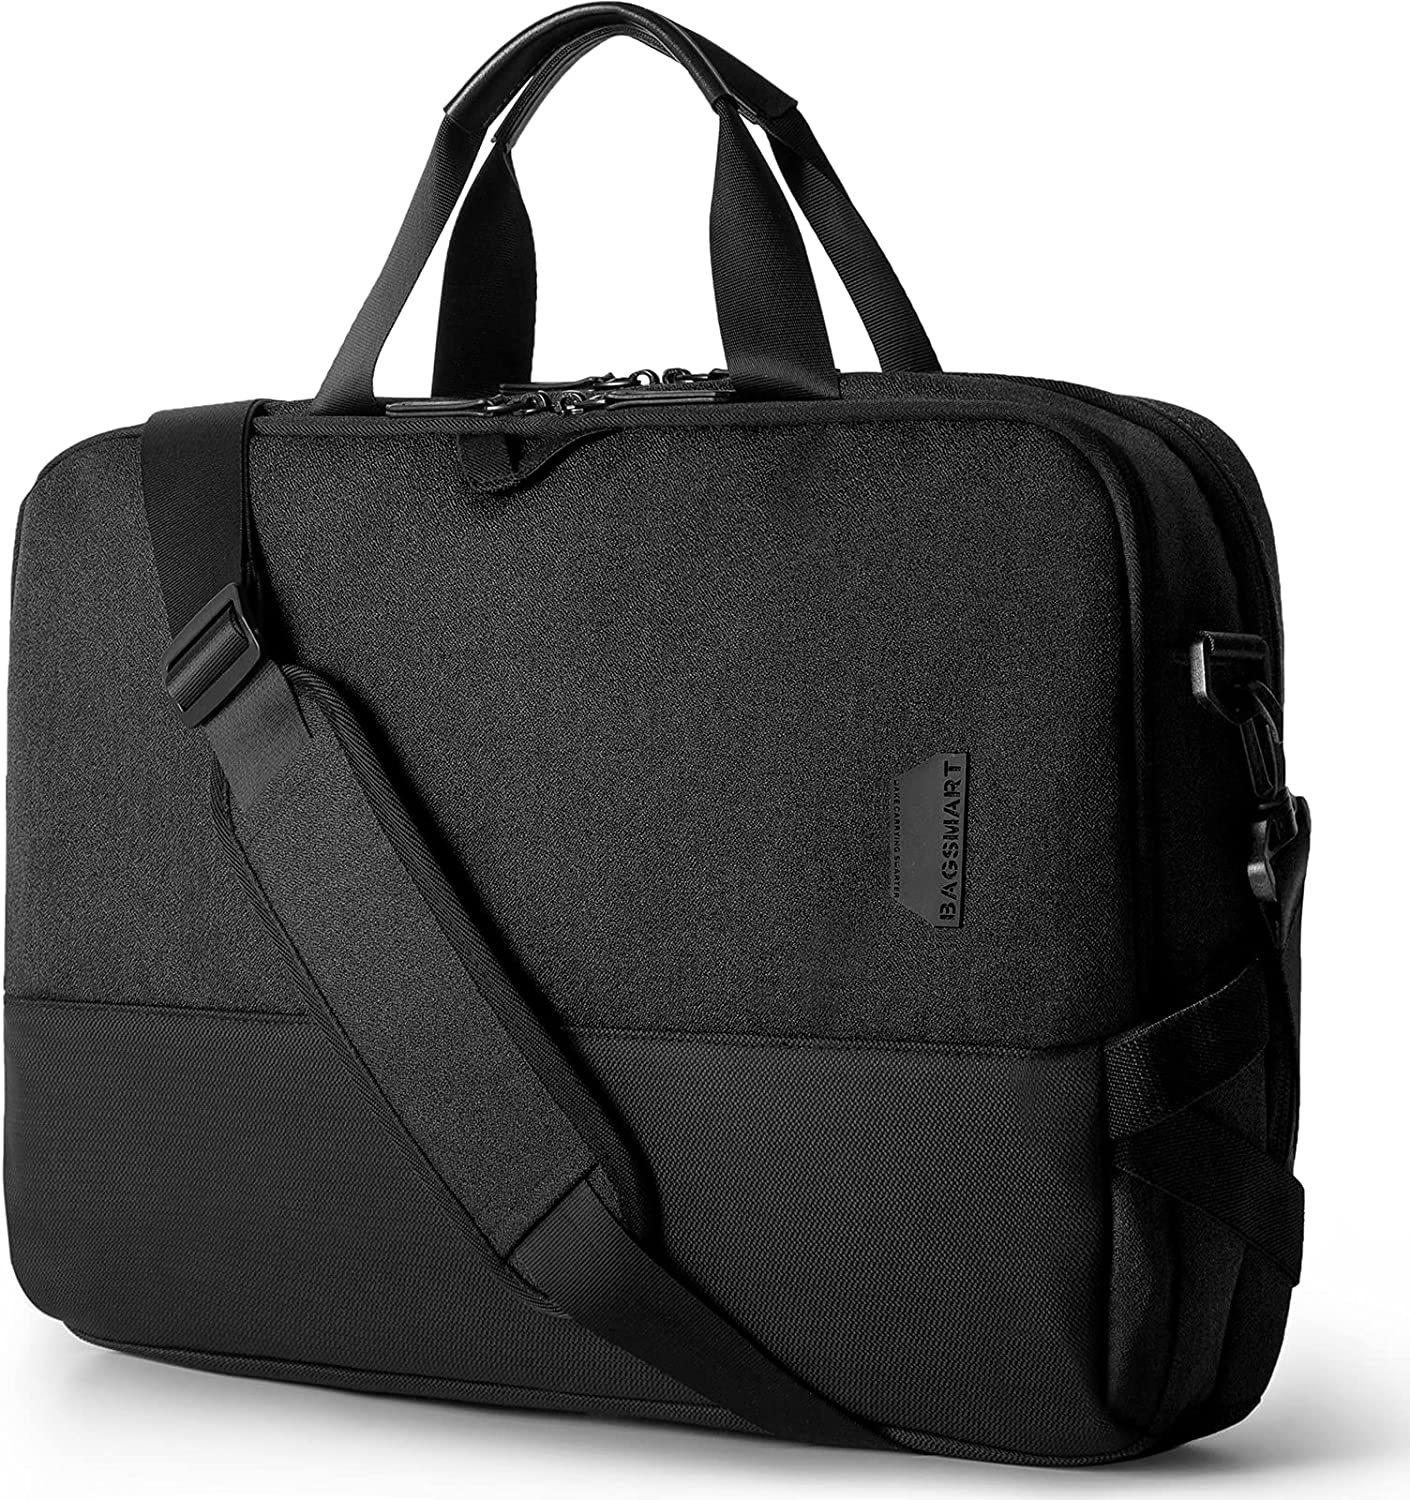 Laptop Bag,BAGSMART 15.6 Inch Laptop Case for Men Women Computer Bag Briefcase Work Business Travel